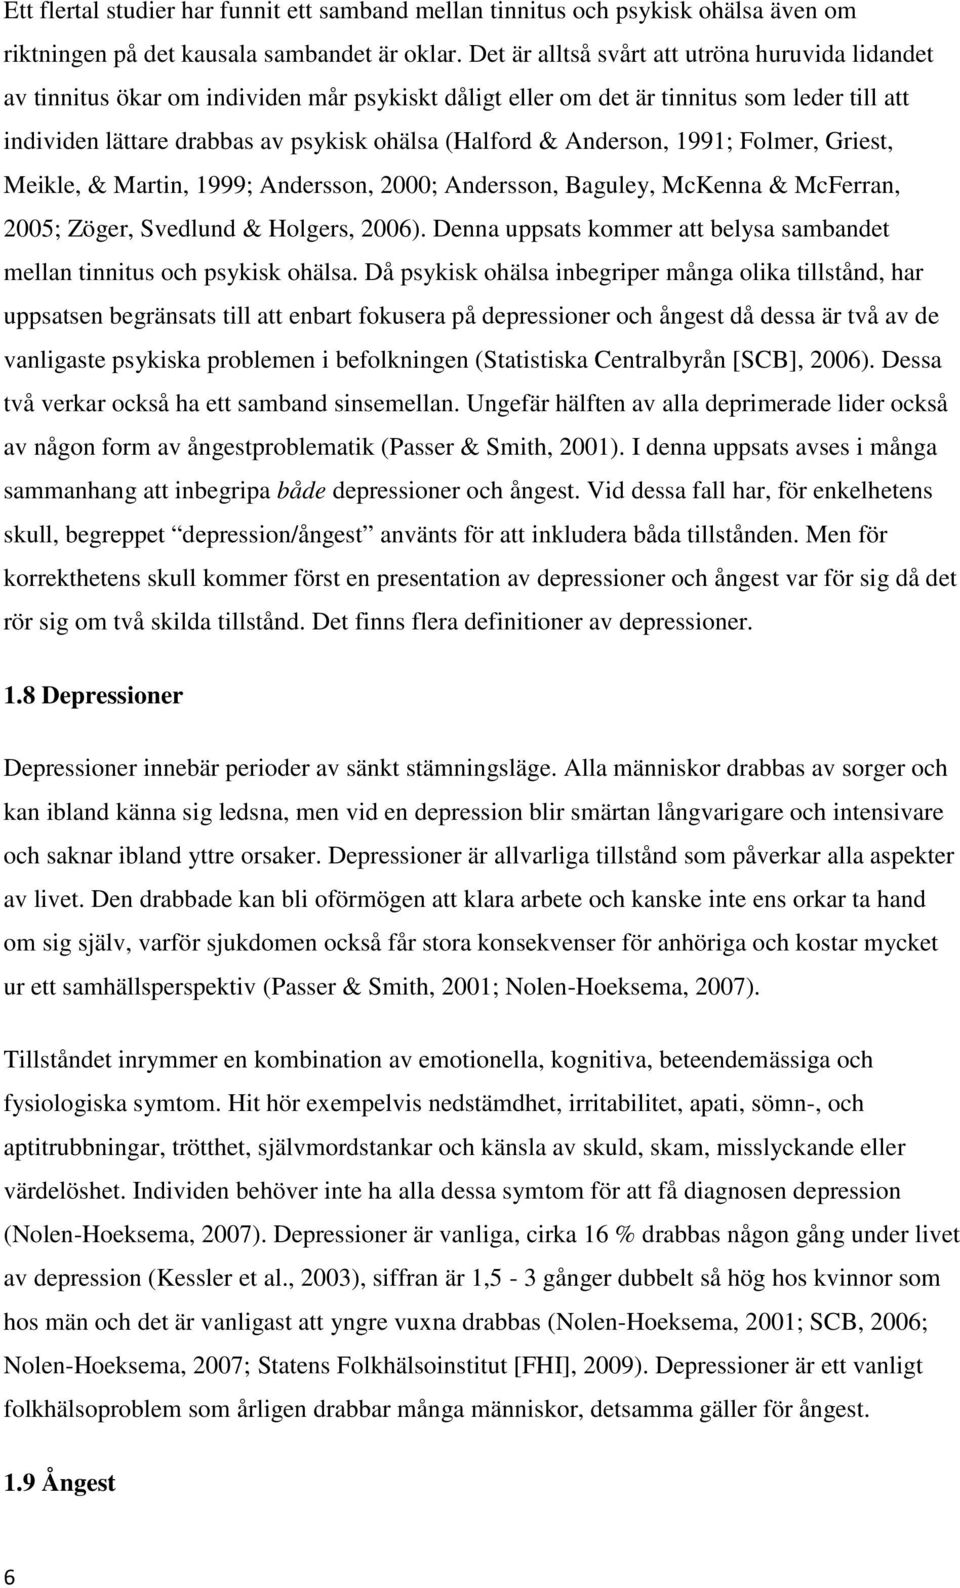 Anderson, 1991; Folmer, Griest, Meikle, & Martin, 1999; Andersson, 2000; Andersson, Baguley, McKenna & McFerran, 2005; Zöger, Svedlund & Holgers, 2006).